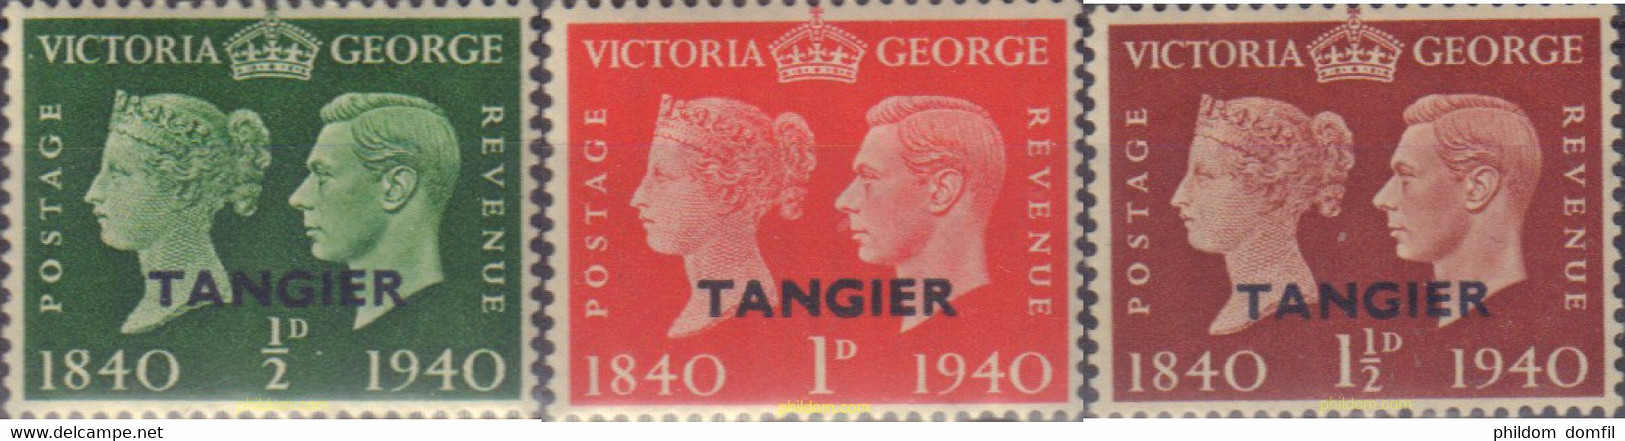 333193 MNH TANGER. Ocupación Britanica 1940 REYES - British Occ. MEF